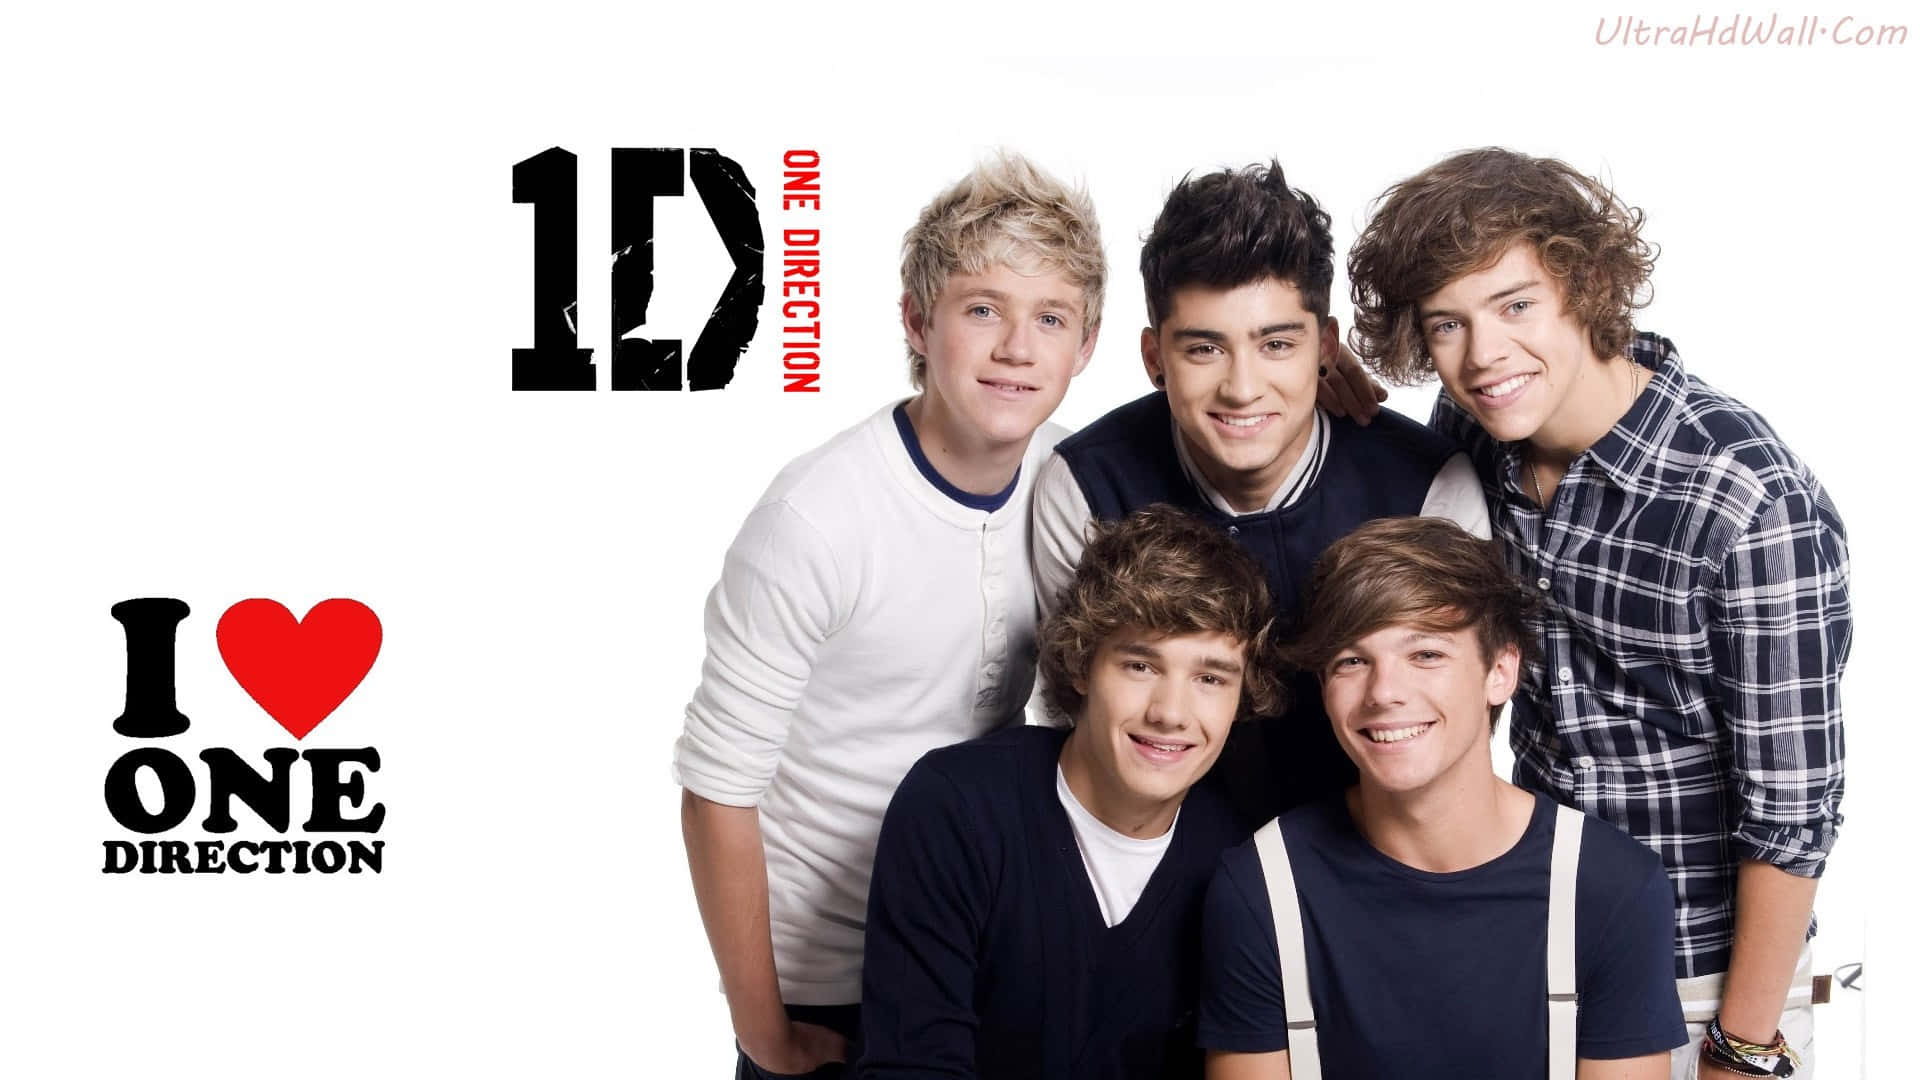 Schaudir Diesen Trendigen Laptop An, Auf Dem Die Gesichter Der Heißesten Boyband Der Welt - One Direction - Zu Sehen Sind! Wallpaper